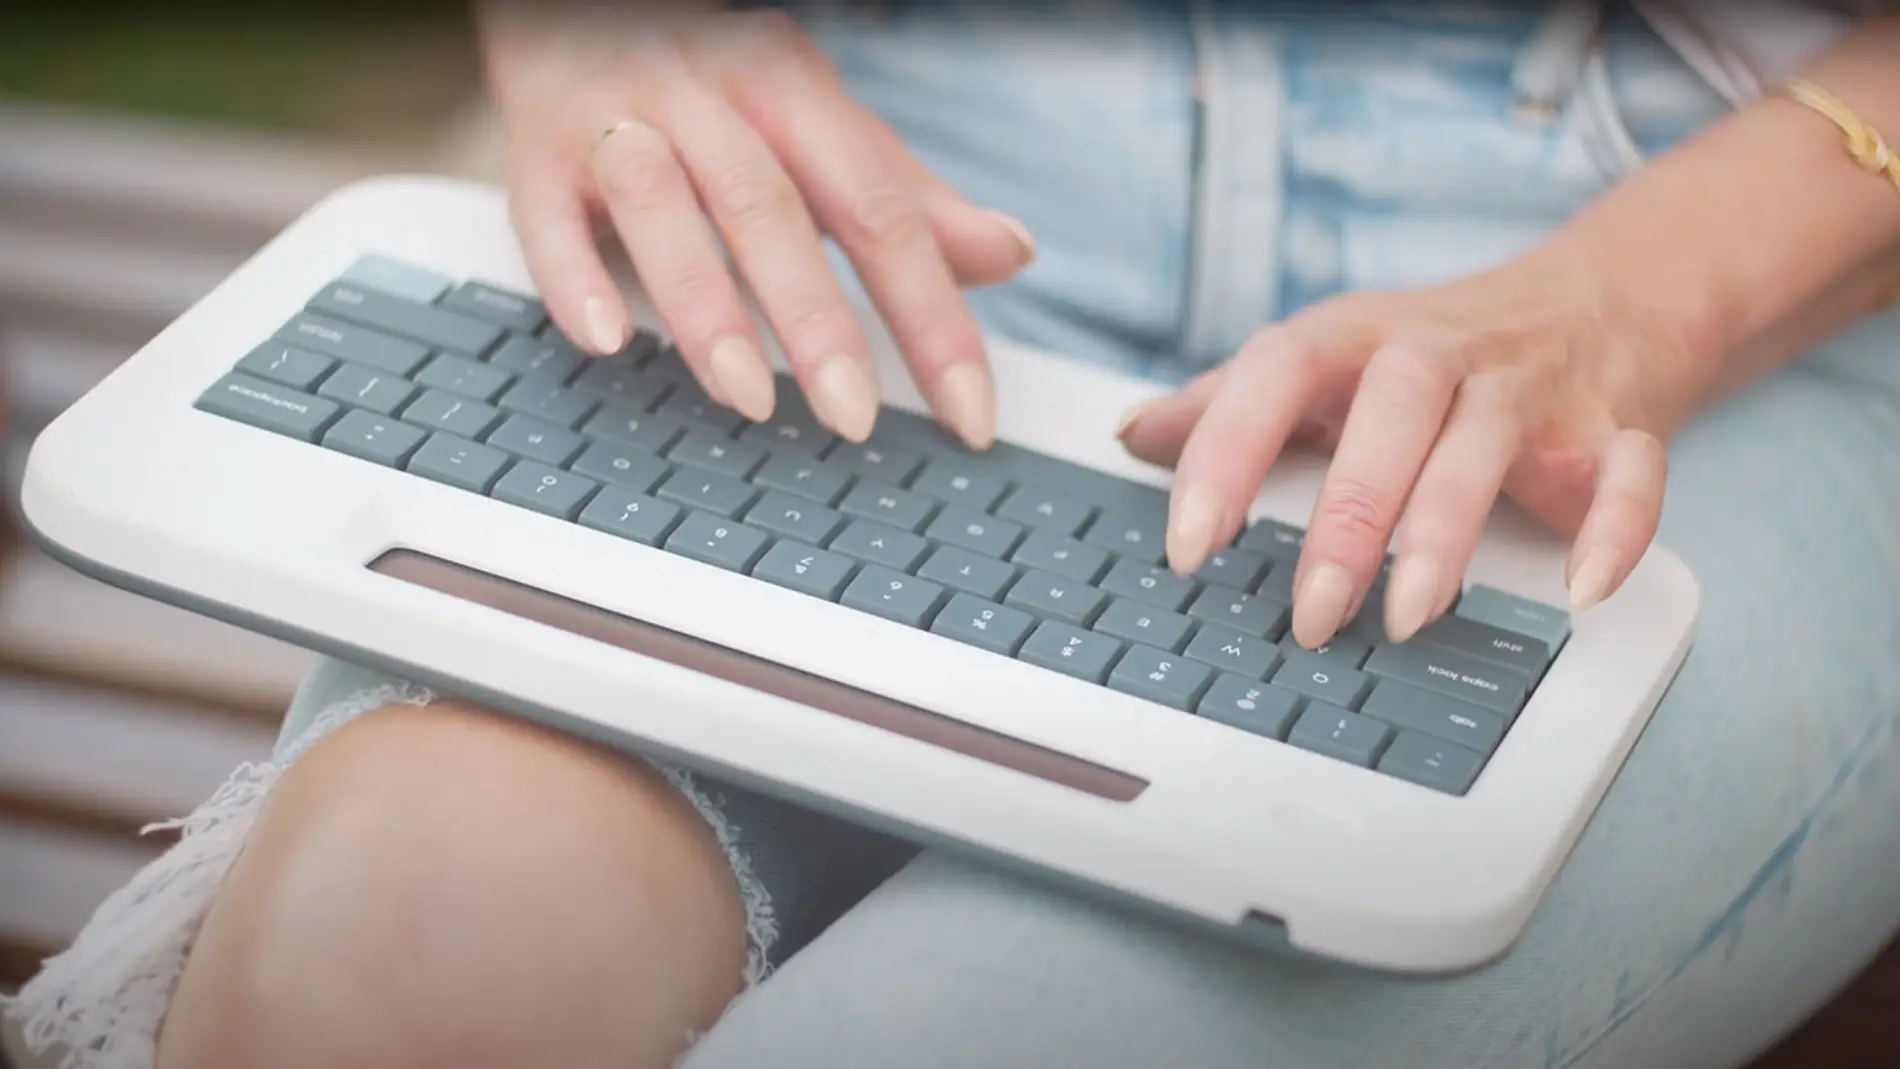 Una máquina de escribir que combina lo mejor de la tecnología con cero  distracciones